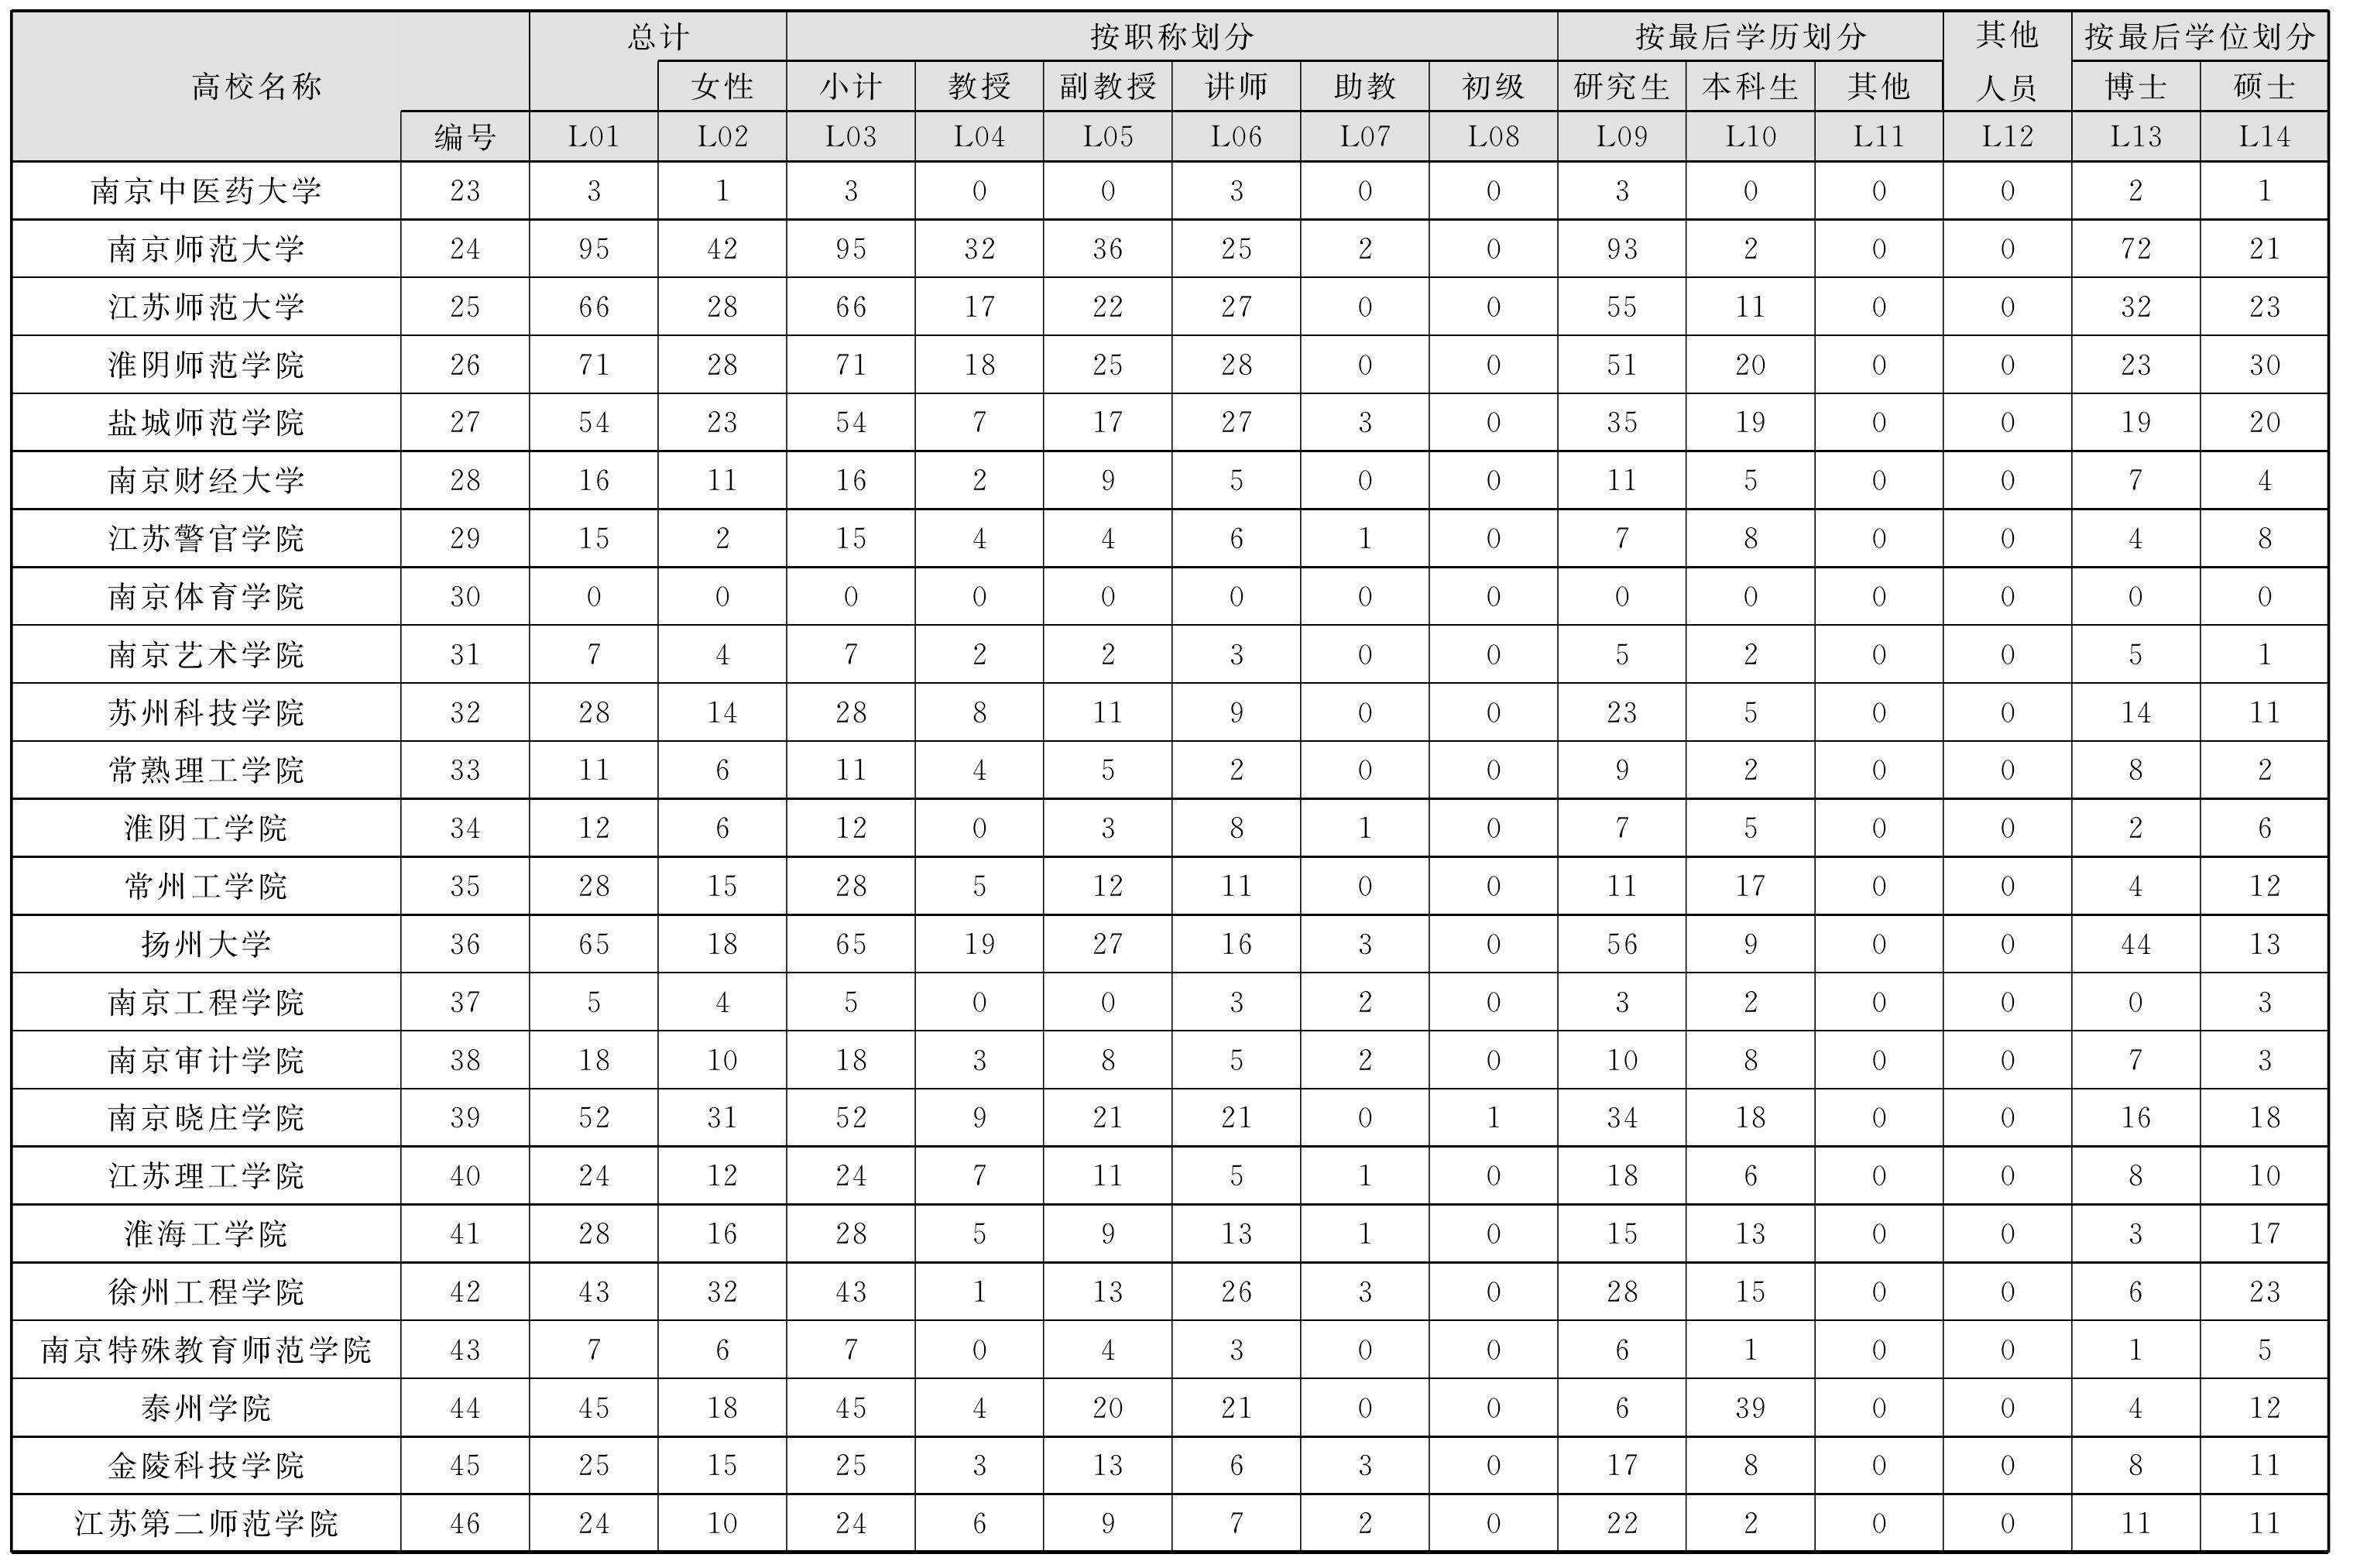 2.7 中国文学人文、社会科学活动人员情况表